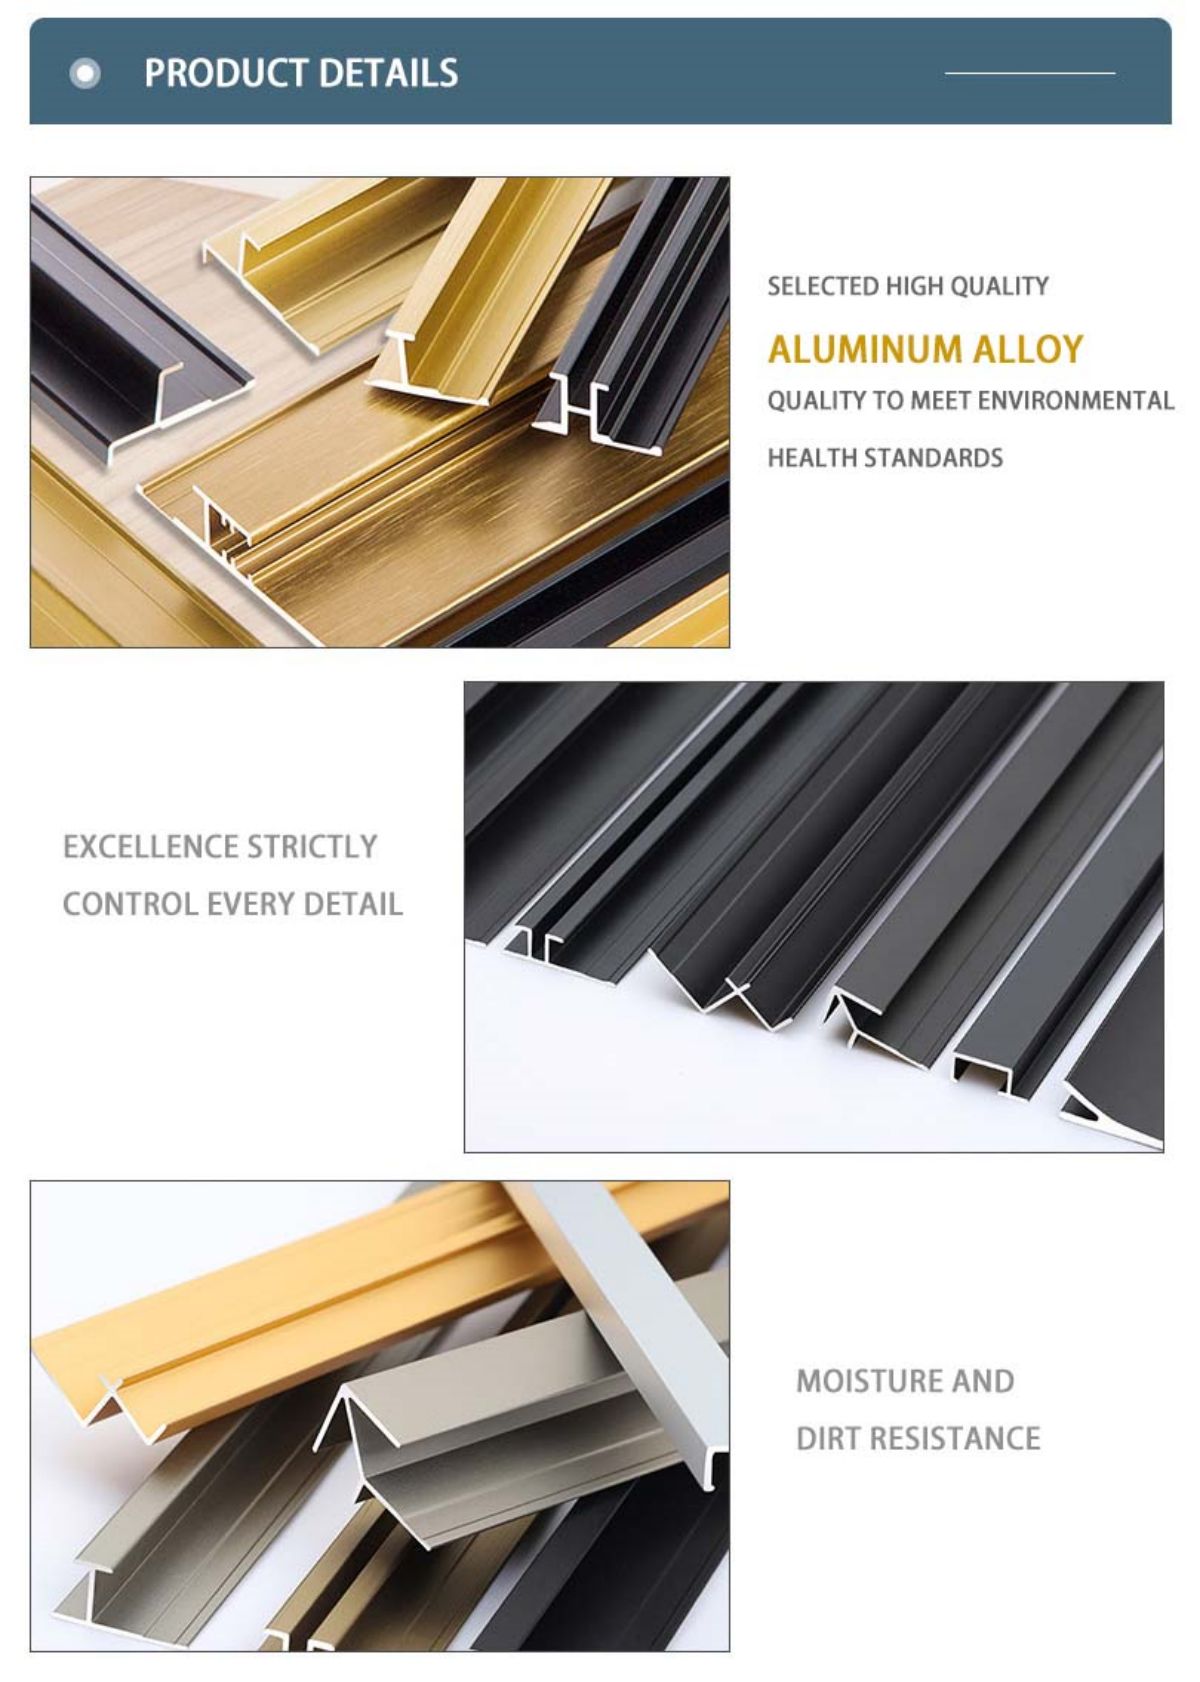 https://www.fsdcbm.com/aluminium-wall-panel-trim/